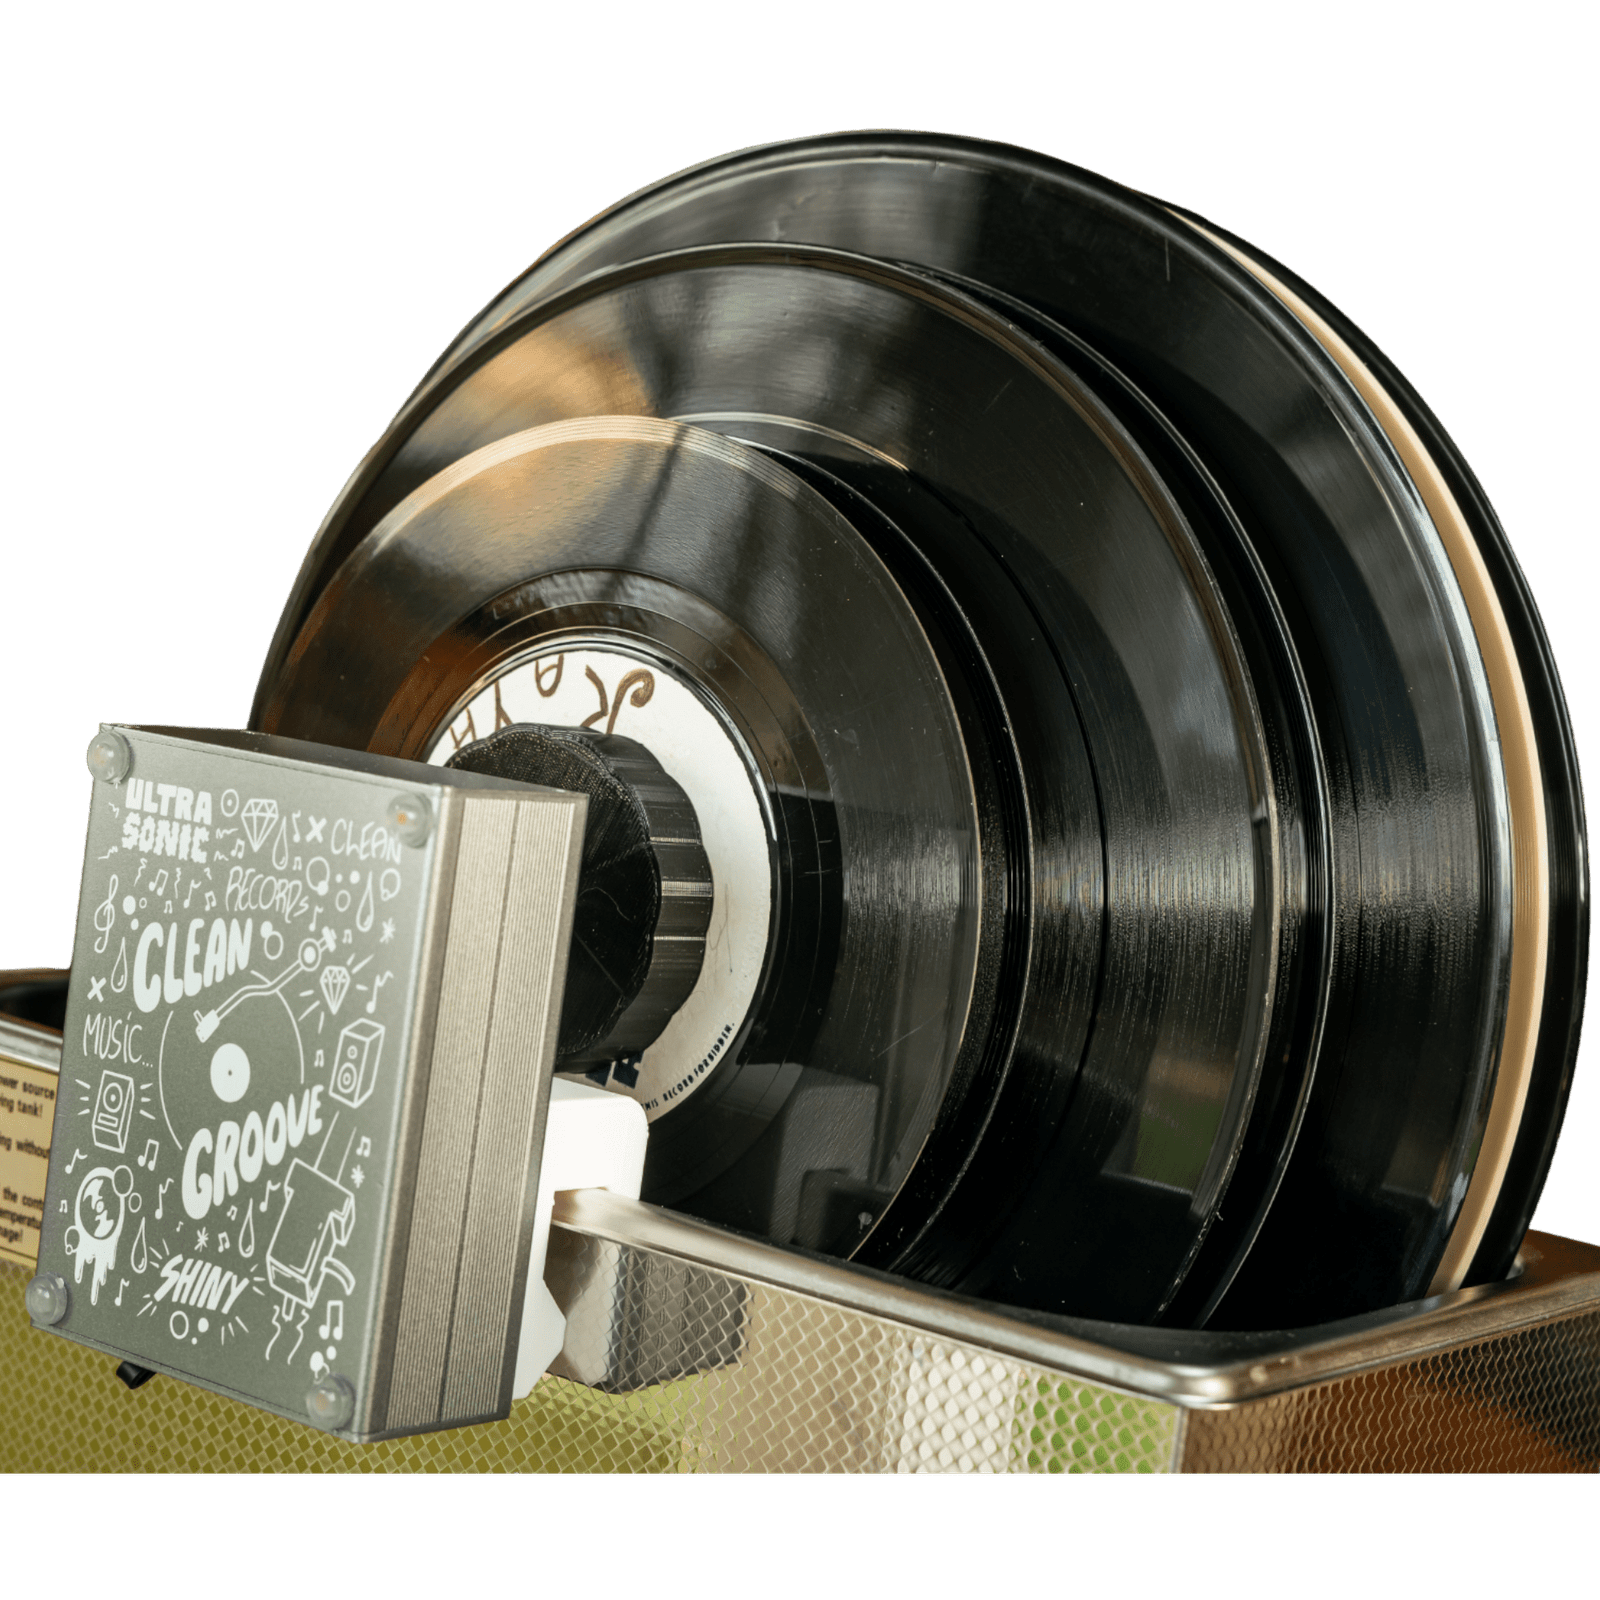 BPAC Nettoyeur ultrasons 6 litres et son nettoyeur de disques vinyles